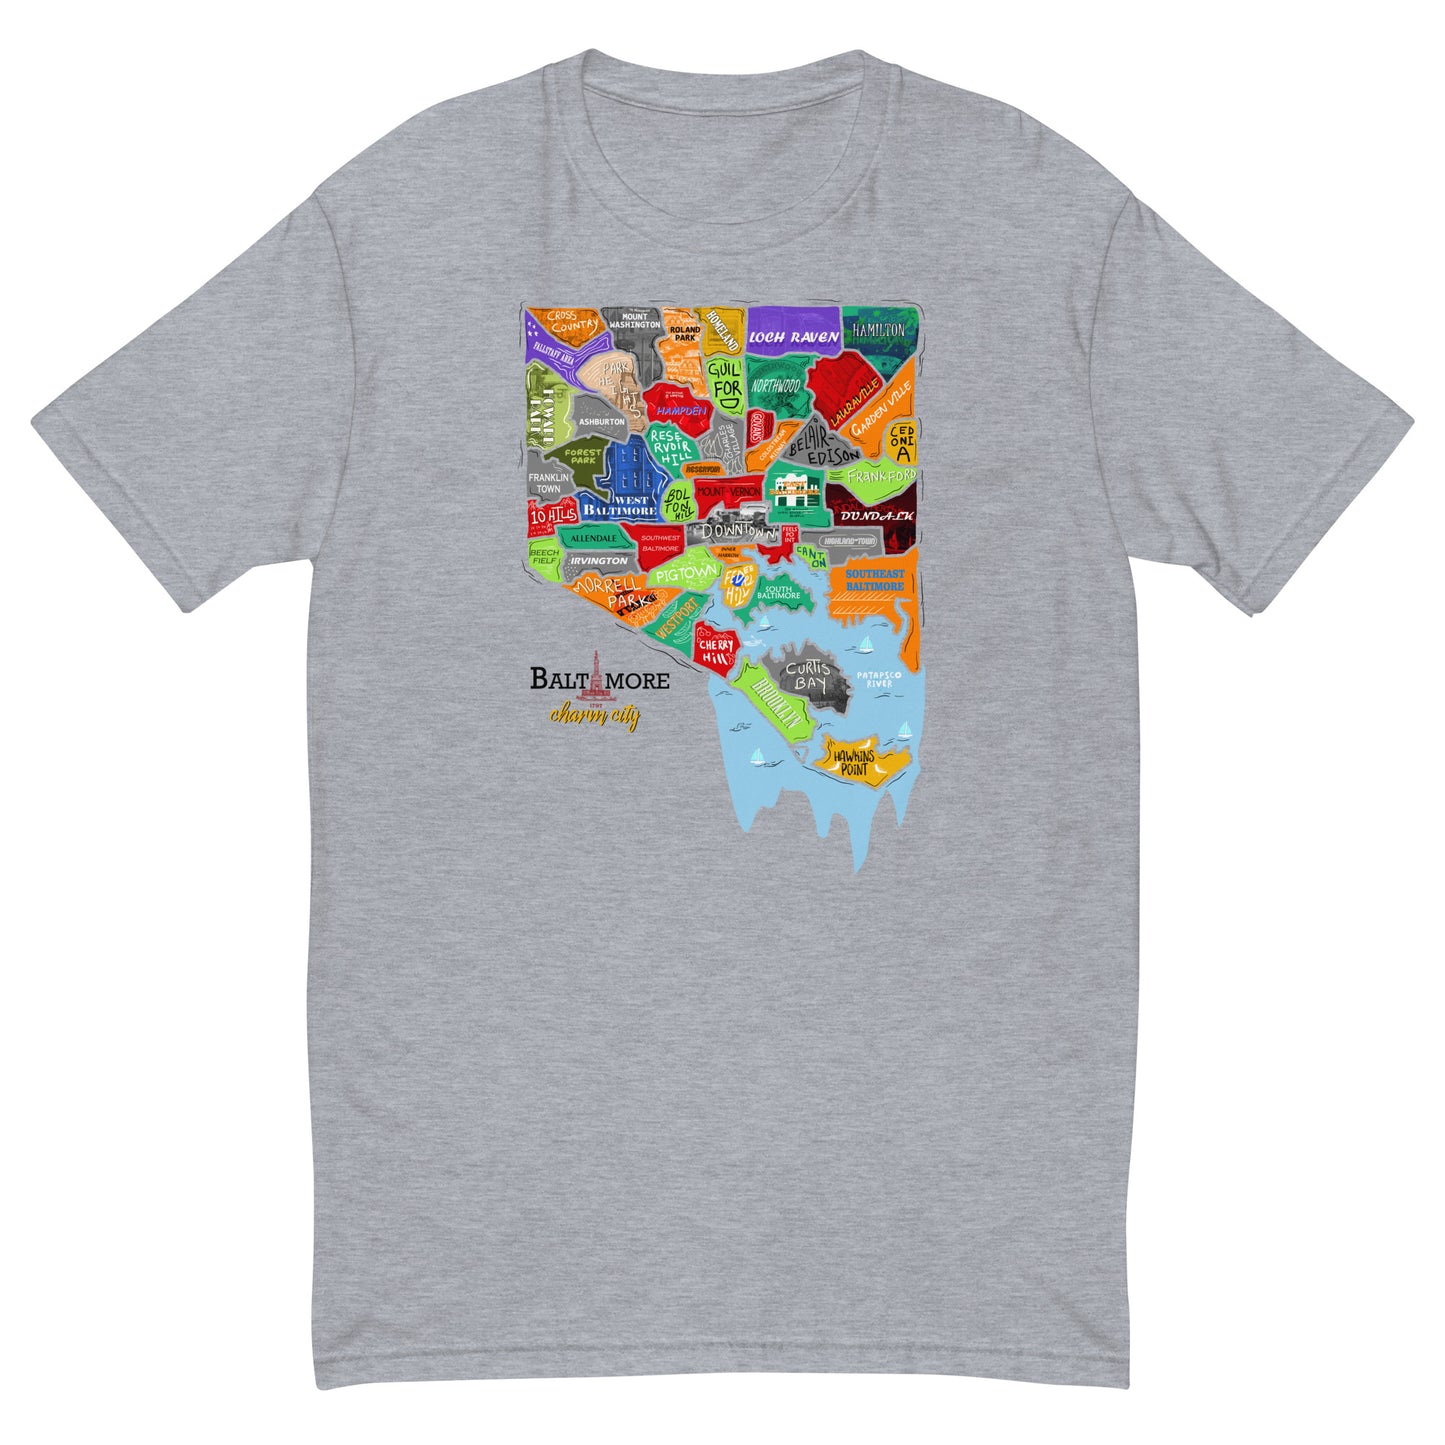 M| Baltimore map T-shirt